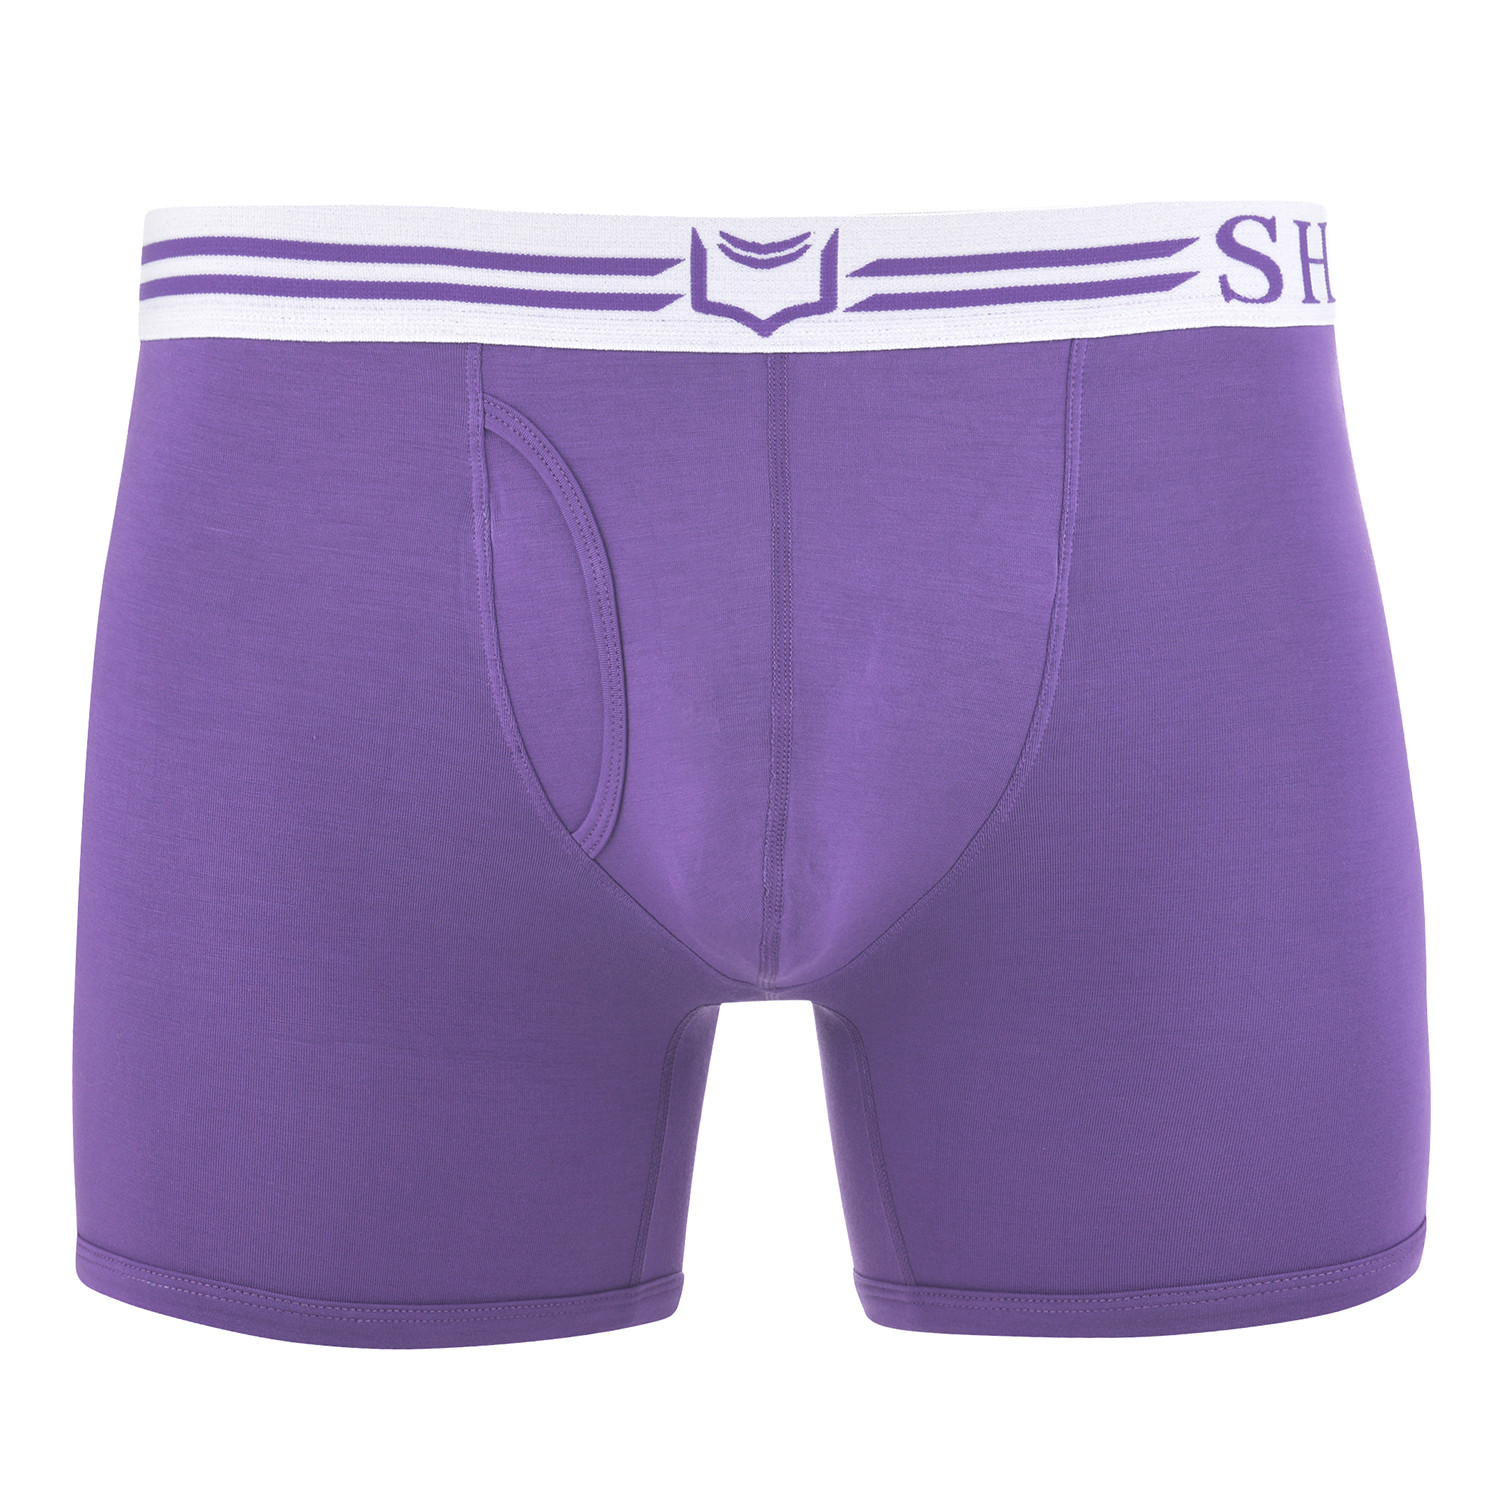 Sheath Men Underwear Dual Pouch 4.0 Boxer Briefs